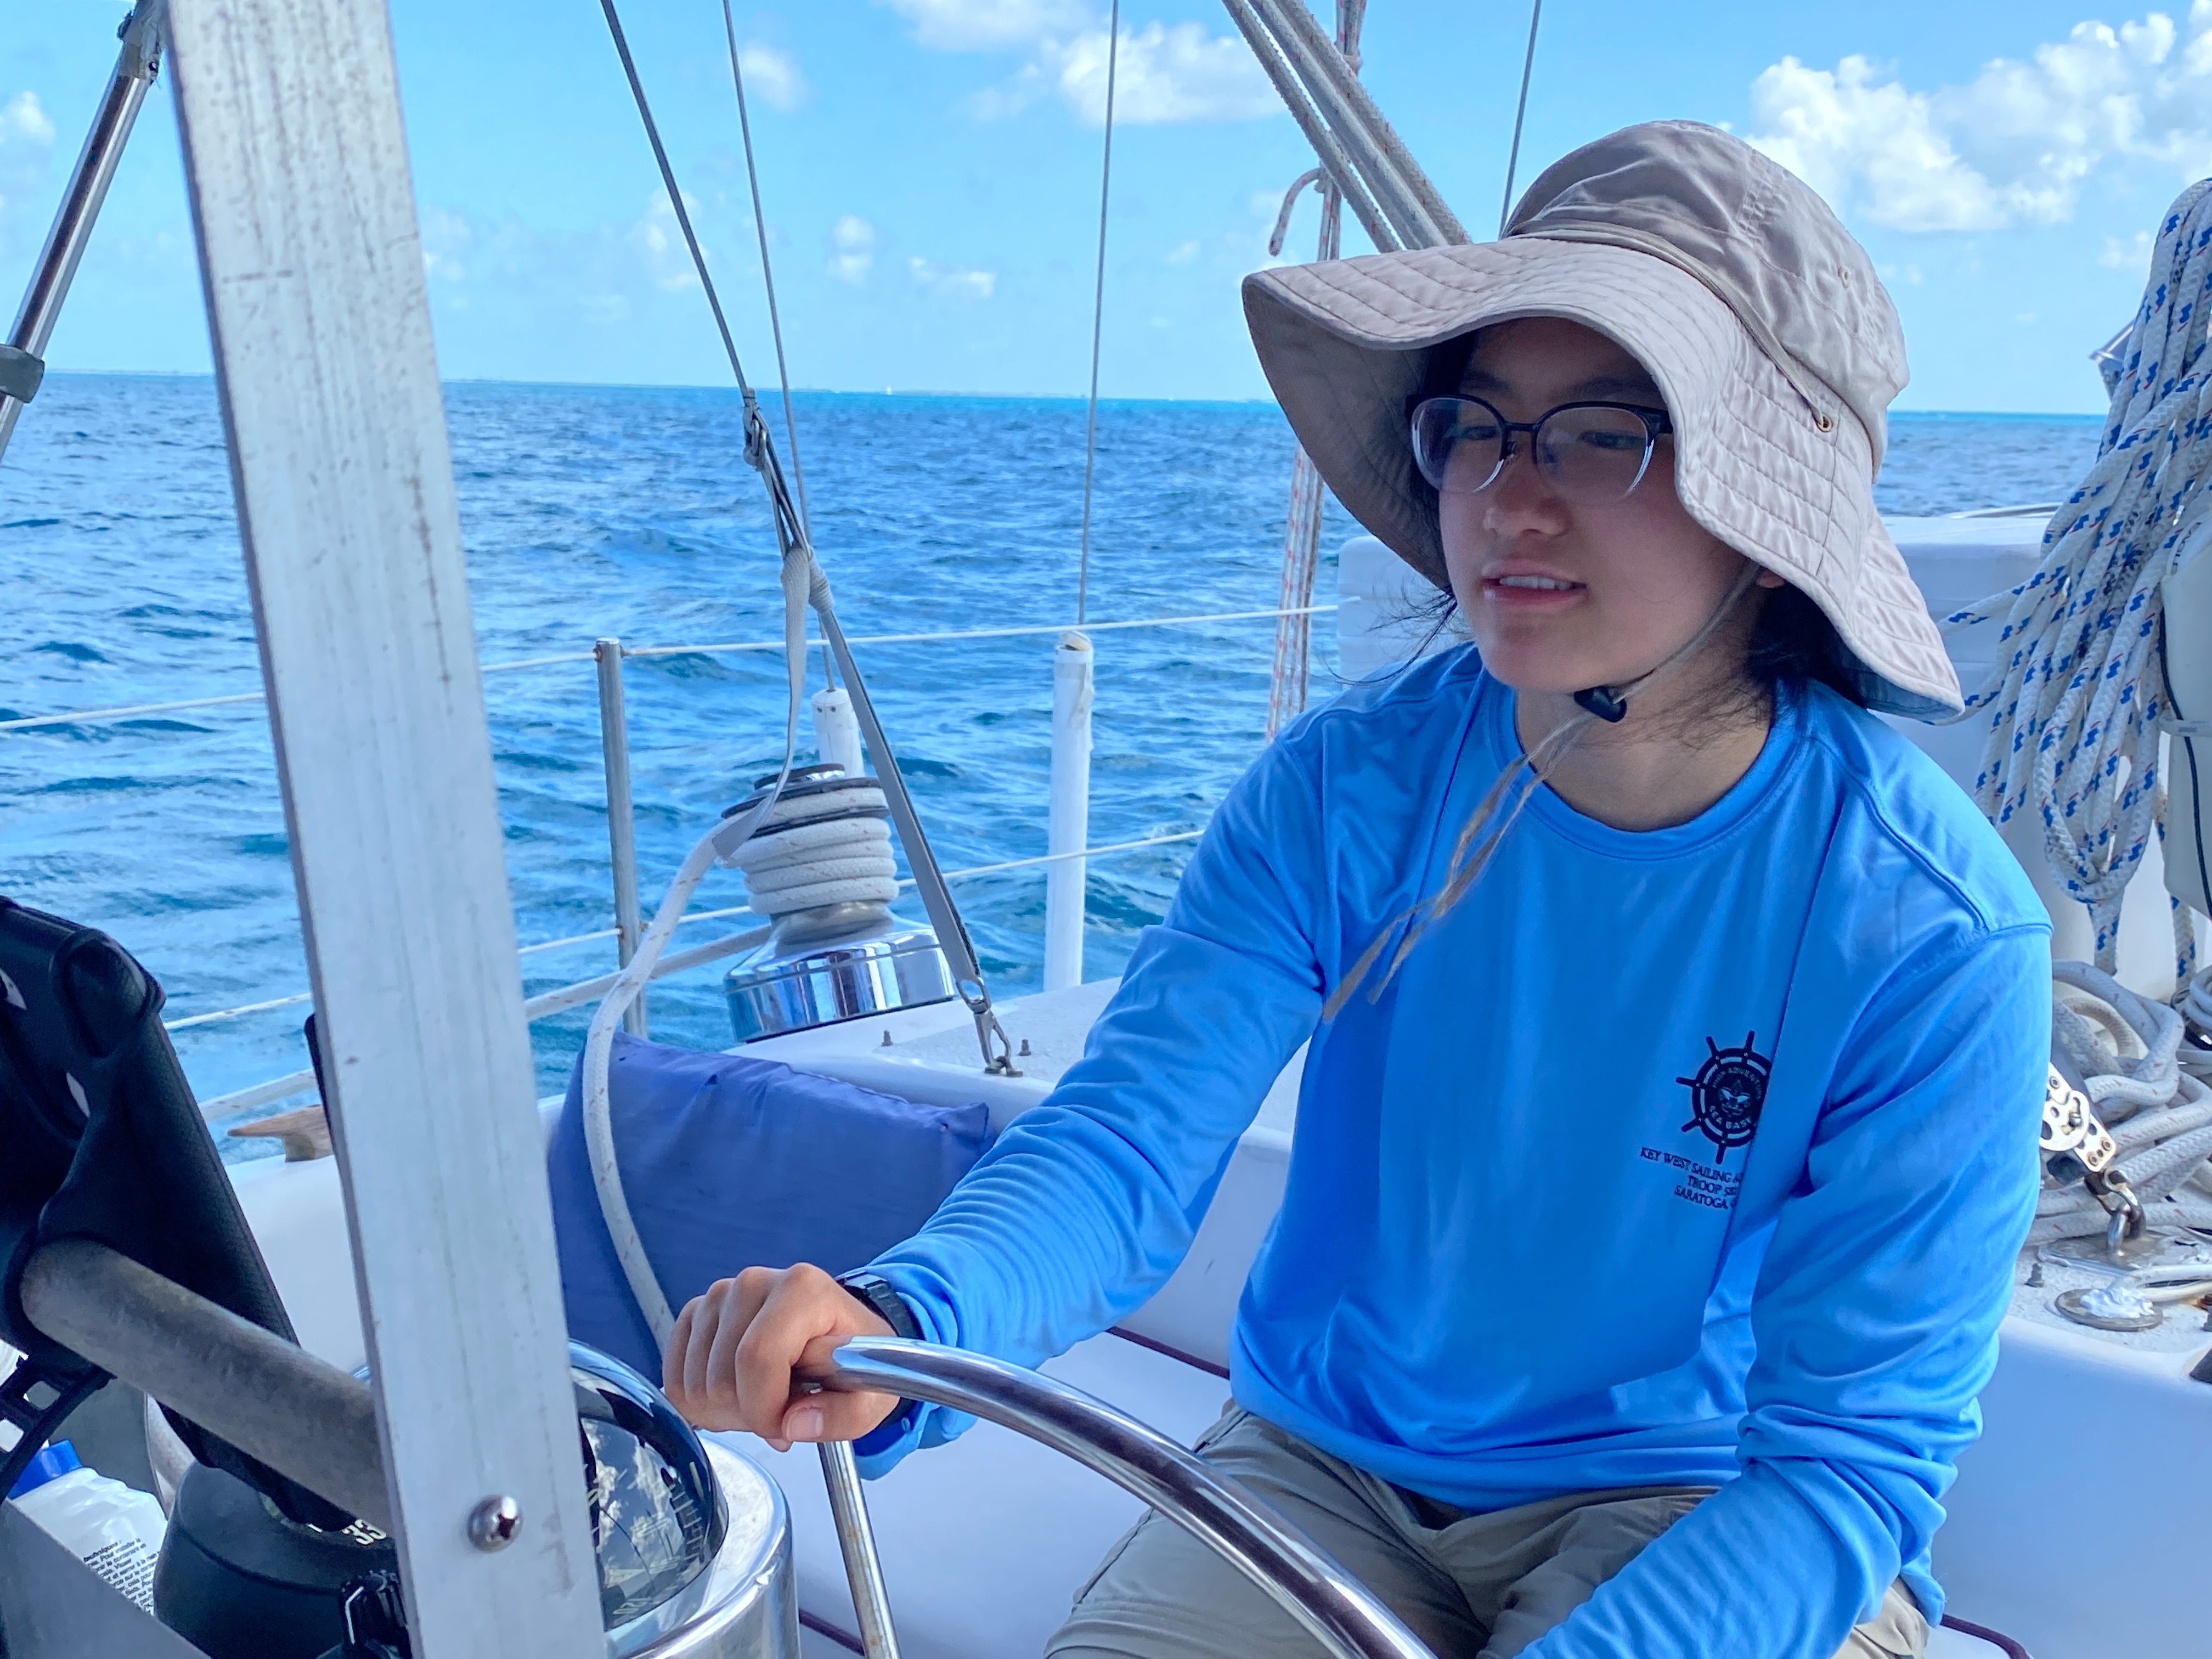 Laura piloting sailboat Seabase High Adventure